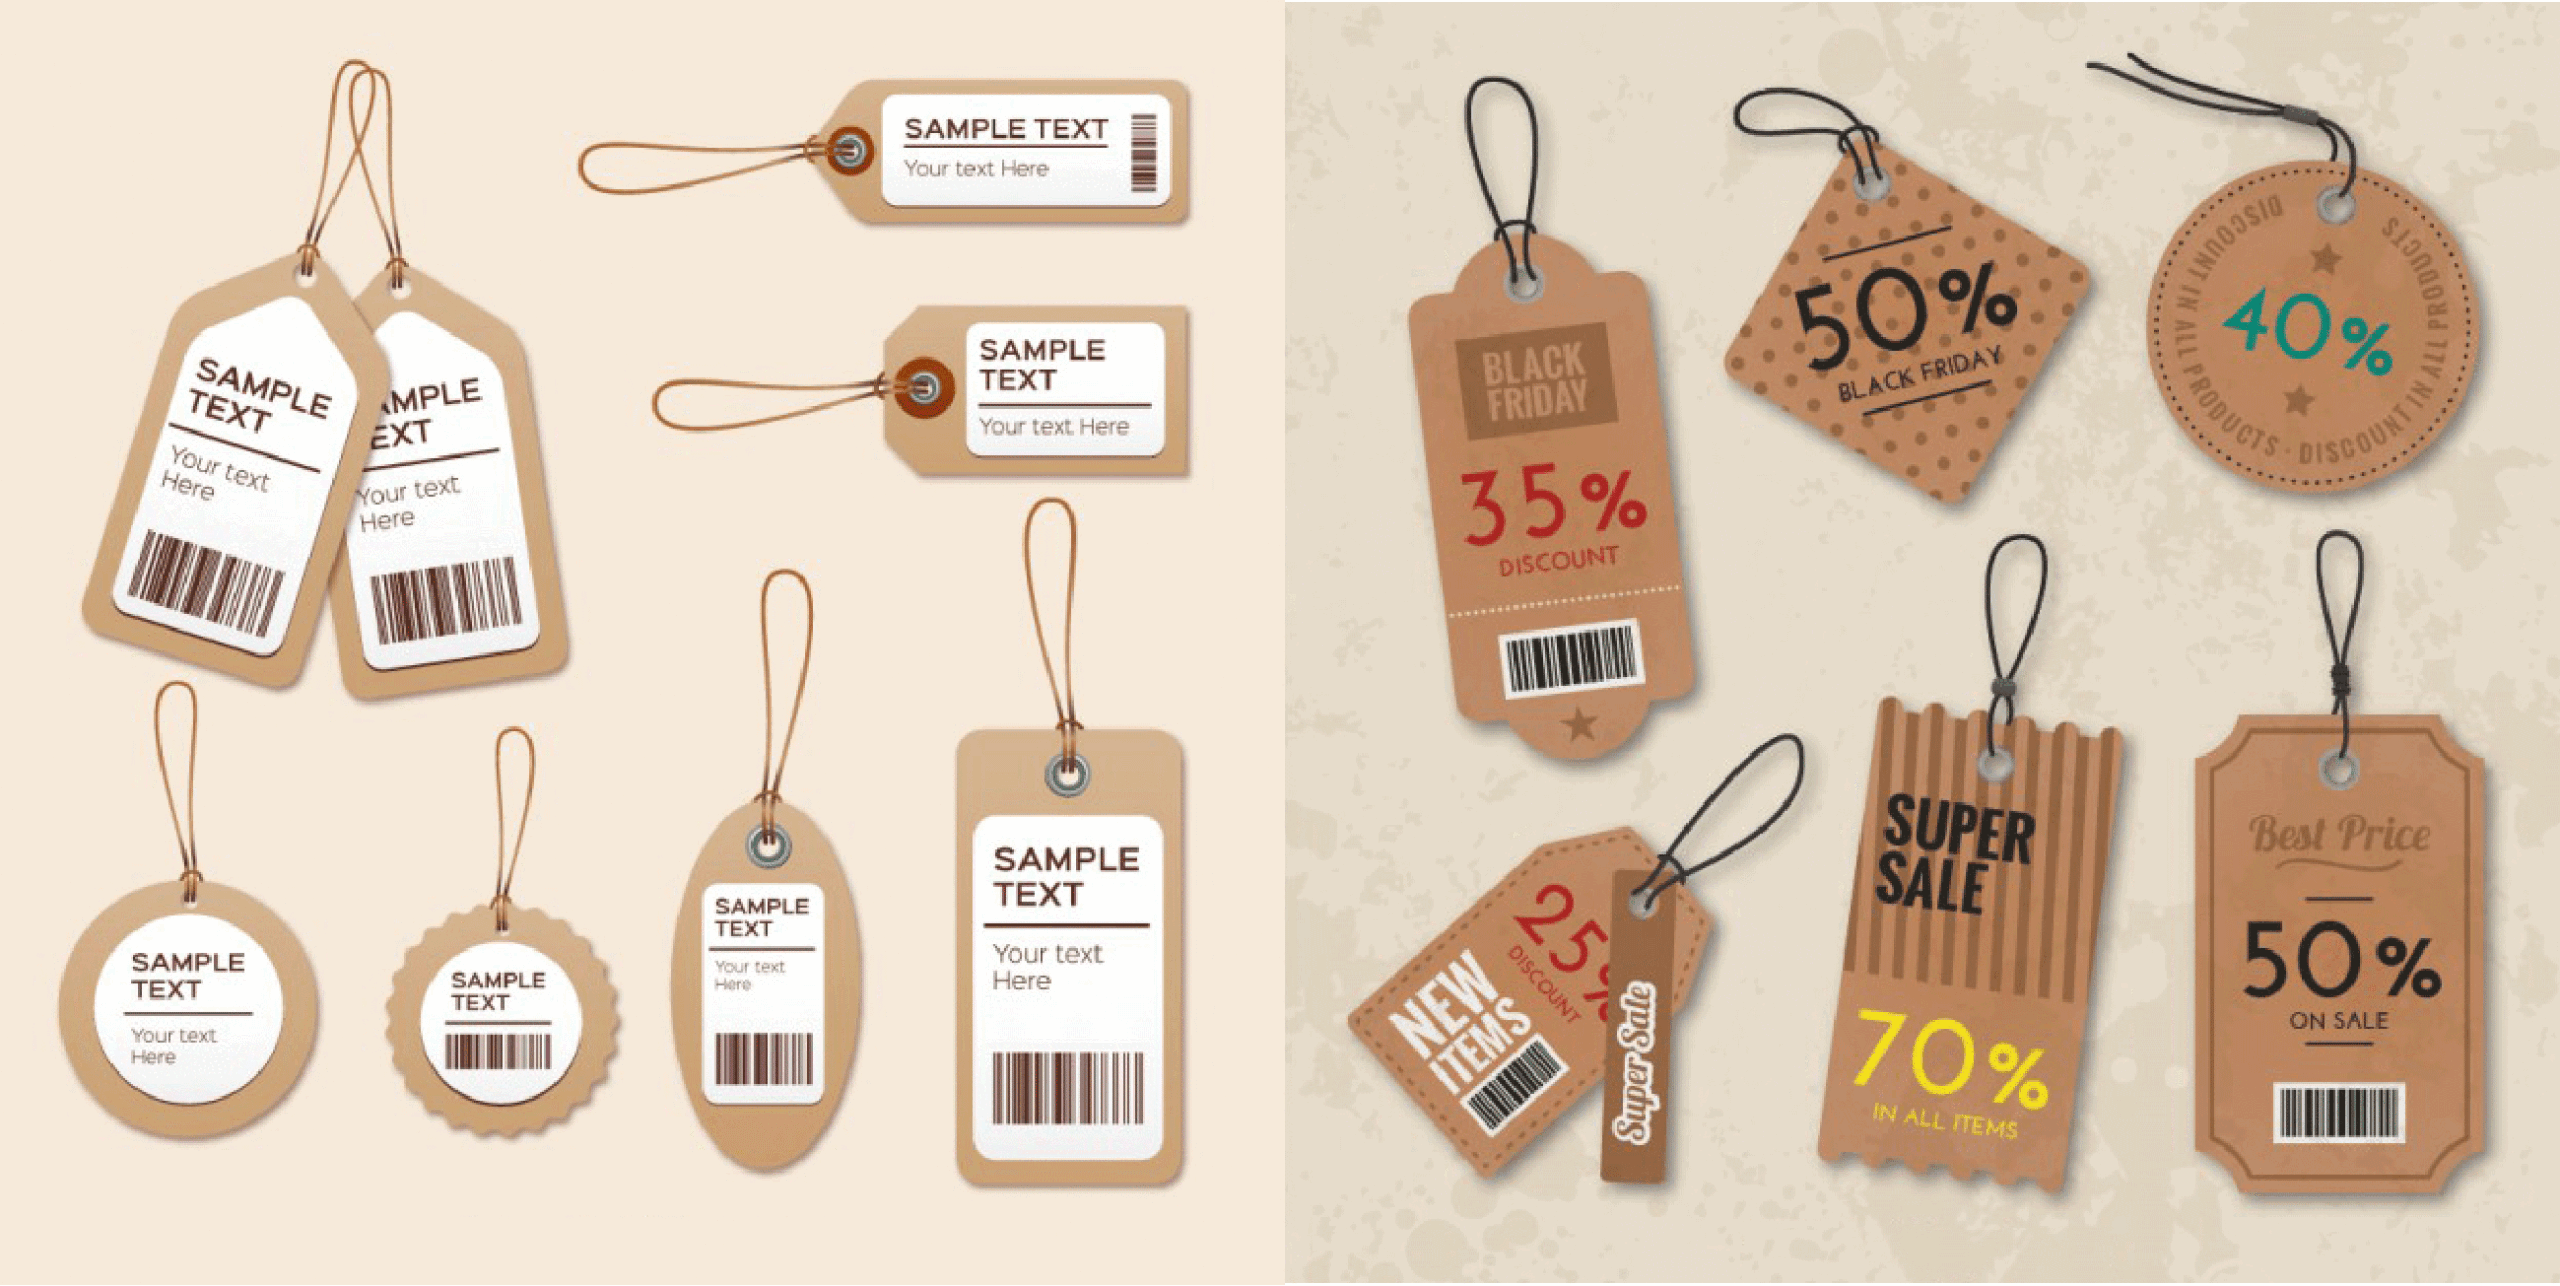 Chất liệu in tag giấy, thẻ treo sản phẩm phổ biến